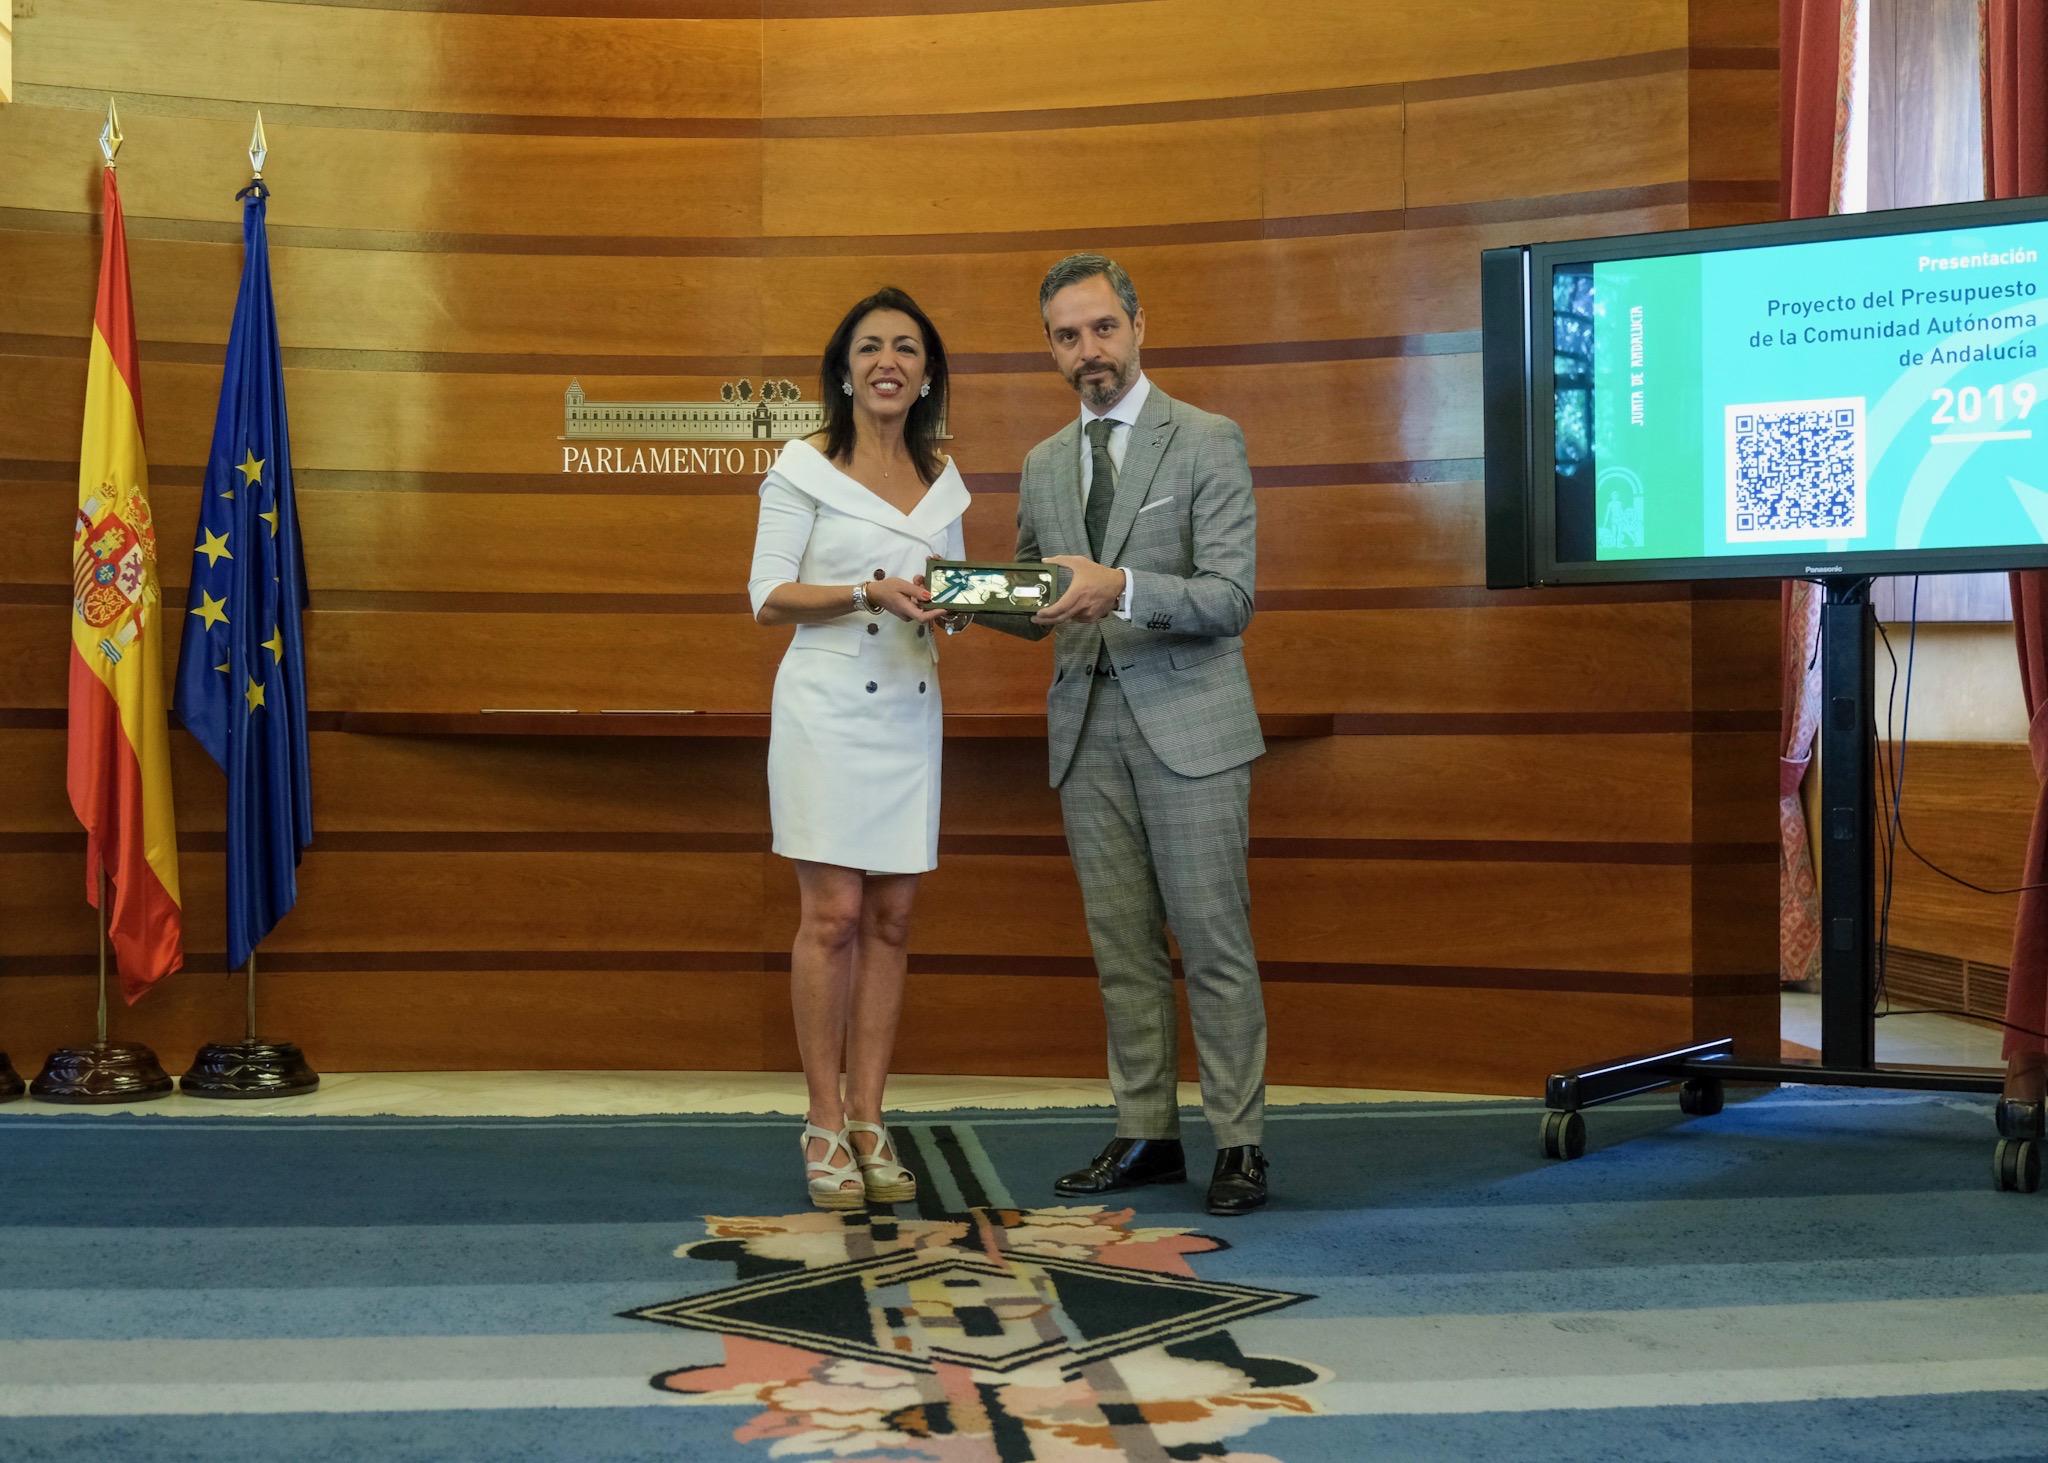   La presidenta del Parlamento, Marta Bosquet, recibe el proyecto de ley de Presupuestos de la Junta de Andaluca para 2019 de manos del consejero de Hacienda, Juan Bravo